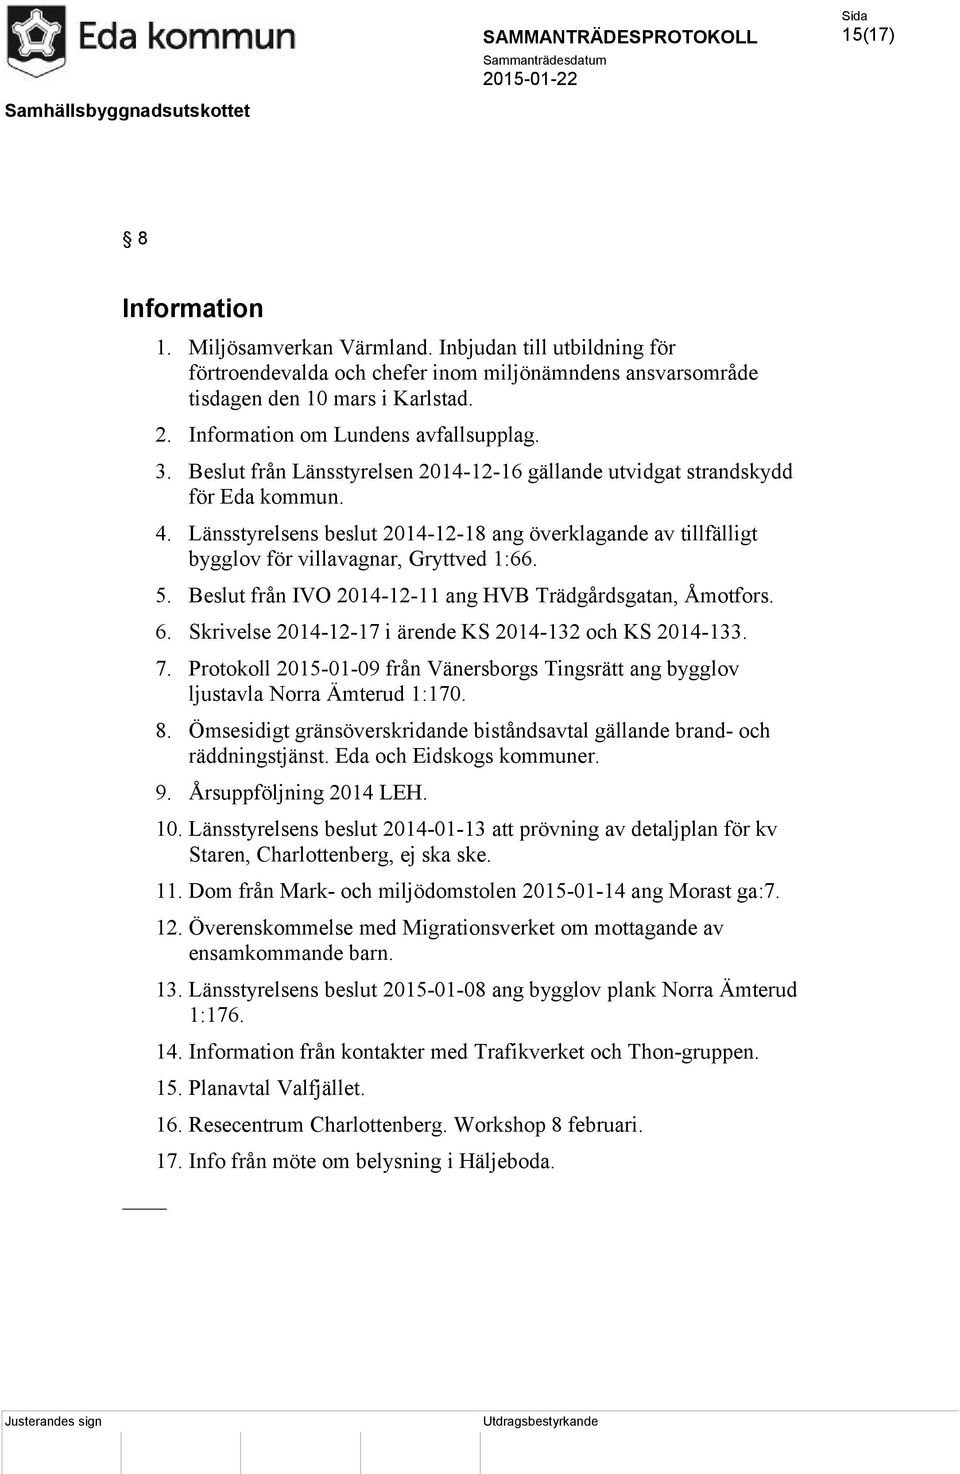 Länsstyrelsens beslut 2014-12-18 ang överklagande av tillfälligt bygglov för villavagnar, Gryttved 1:66. 5. Beslut från IVO 2014-12-11 ang HVB Trädgårdsgatan, Åmotfors. 6.